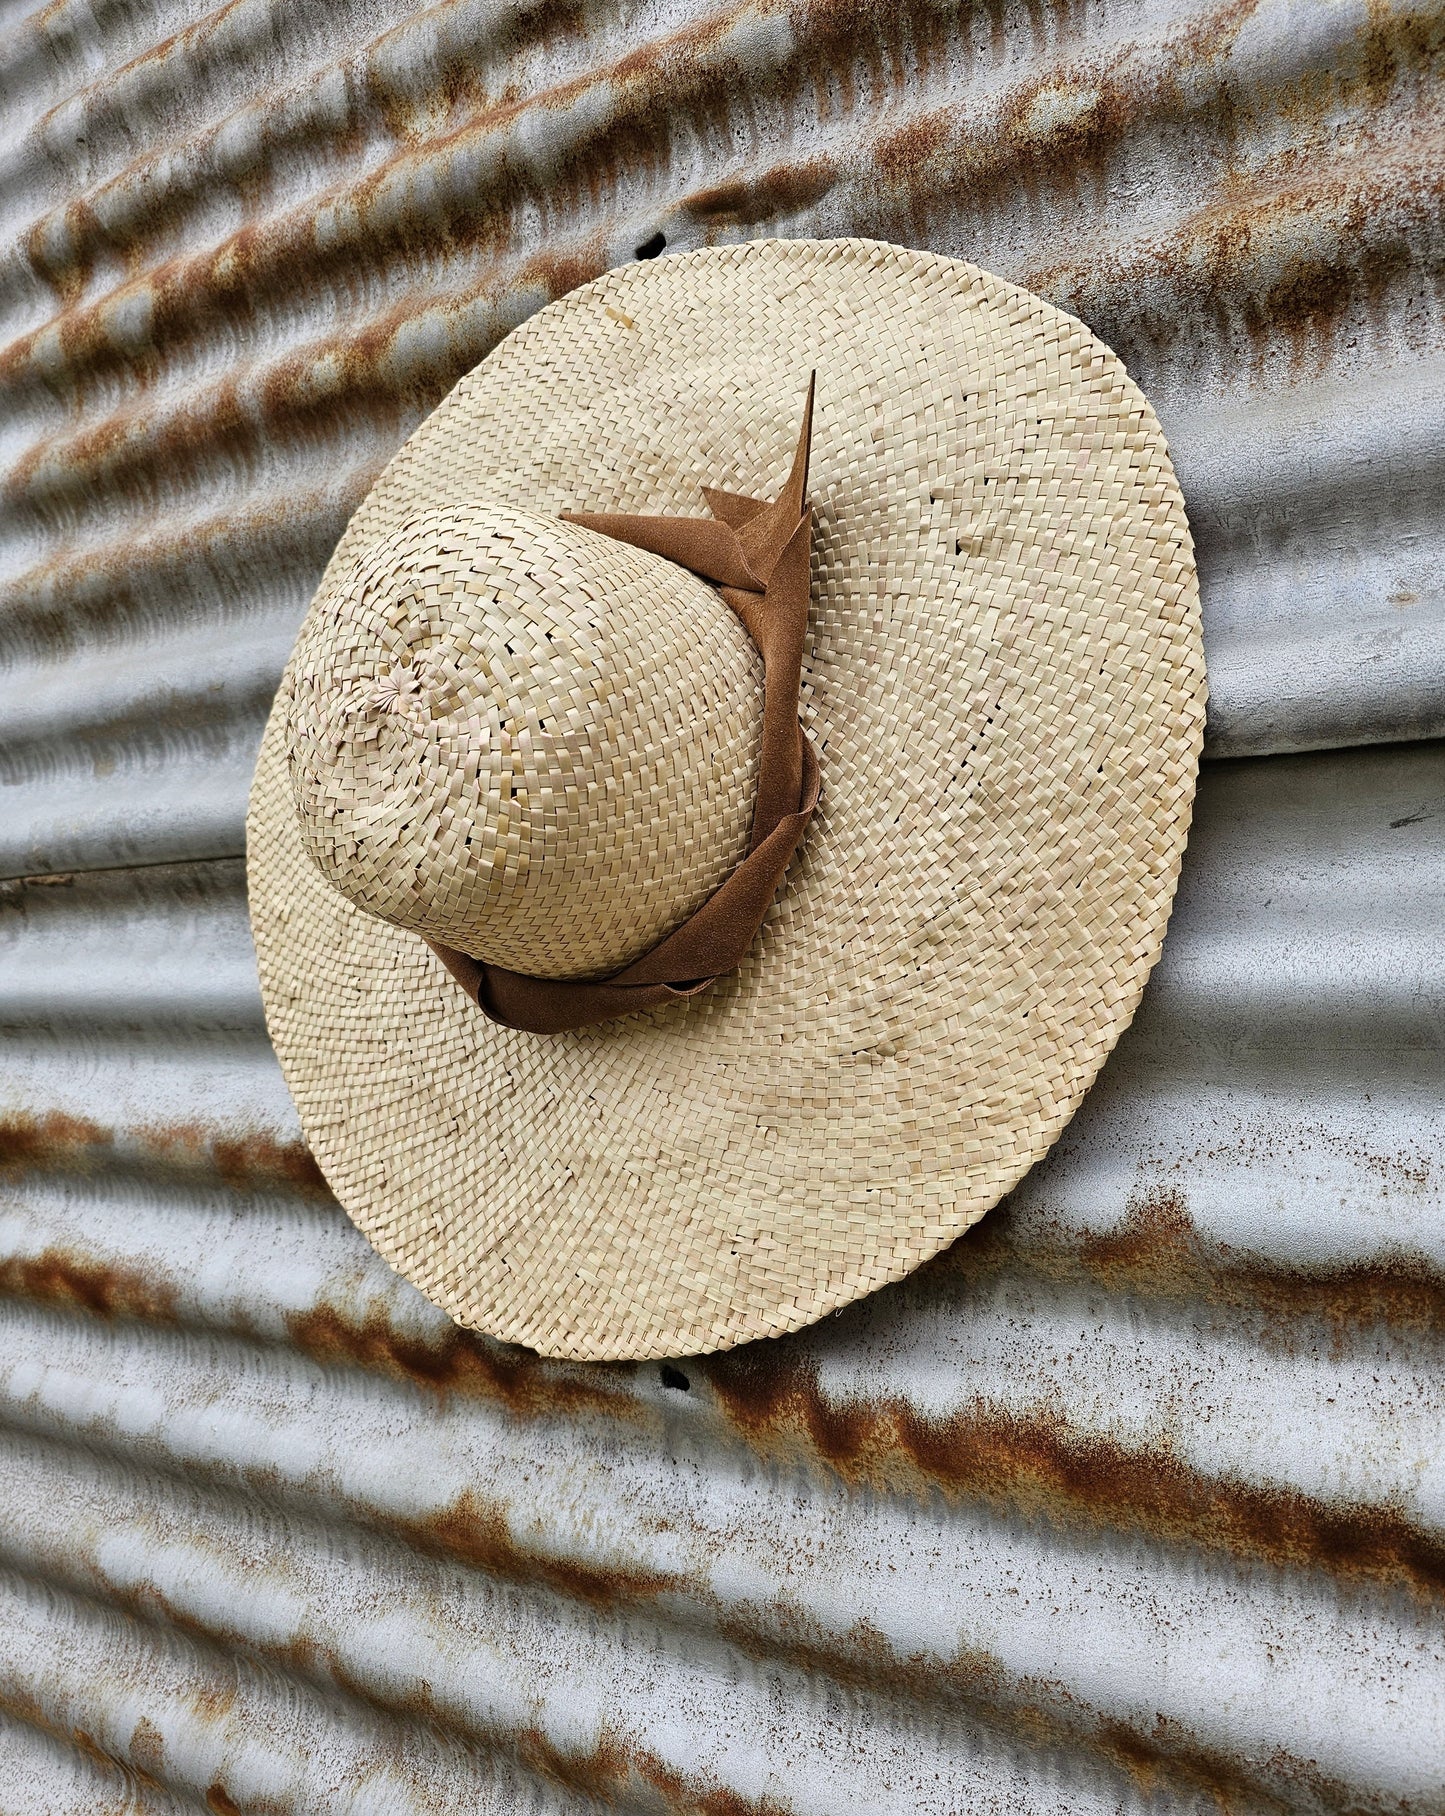 Dubrovnik Hat